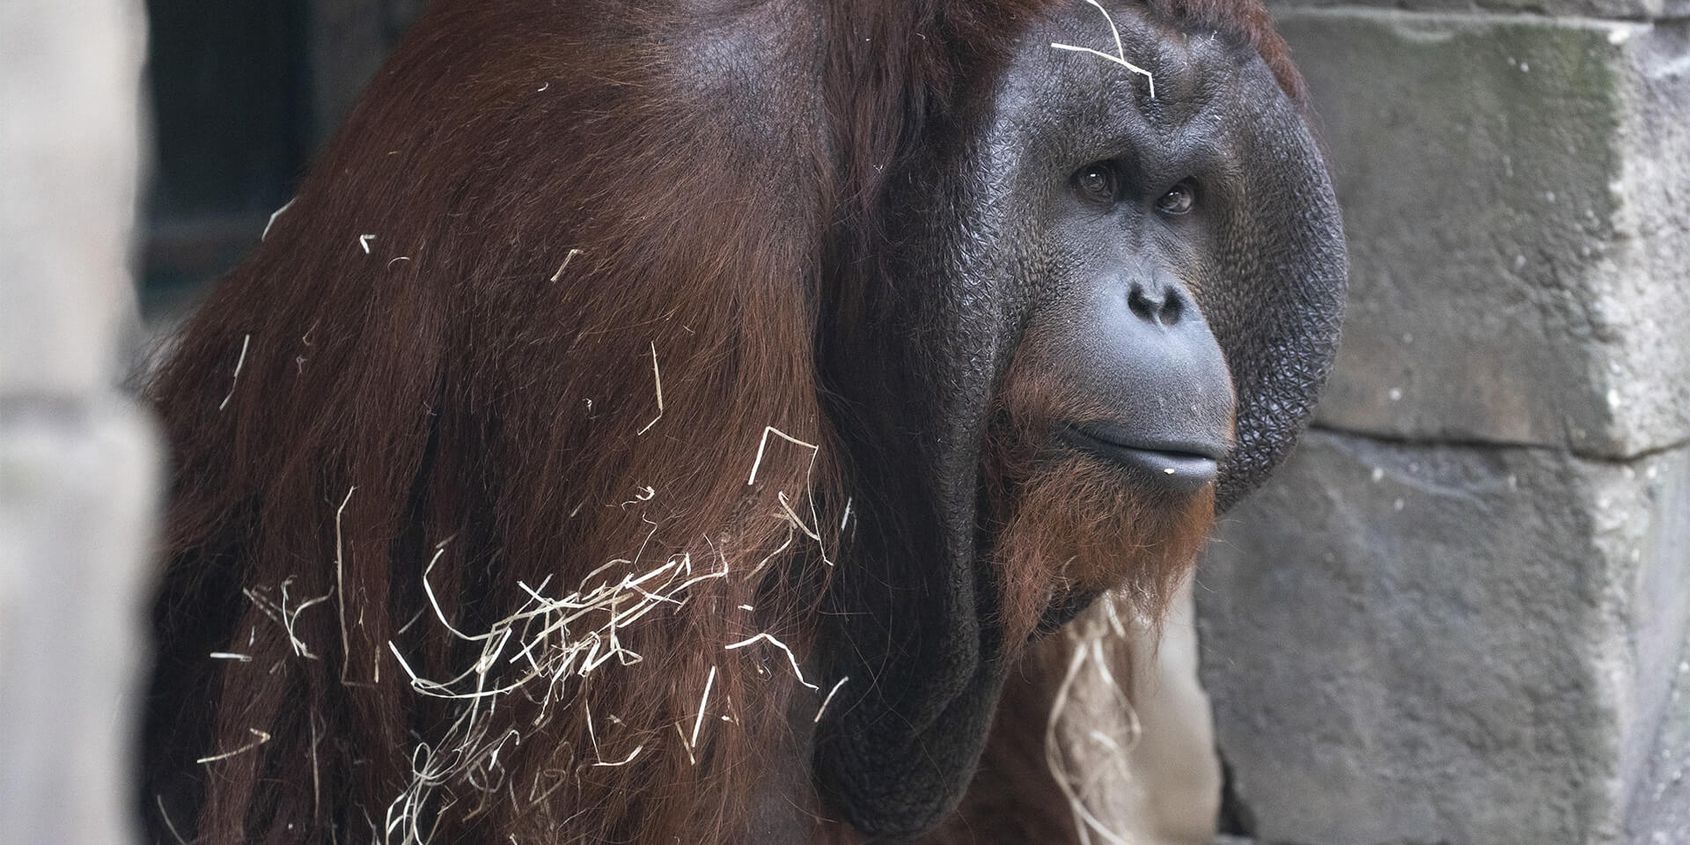 Mâle orang-outan - Les animaux de La Serre des Chimpanzés et Orangs-outans - ZooParc de Beauval